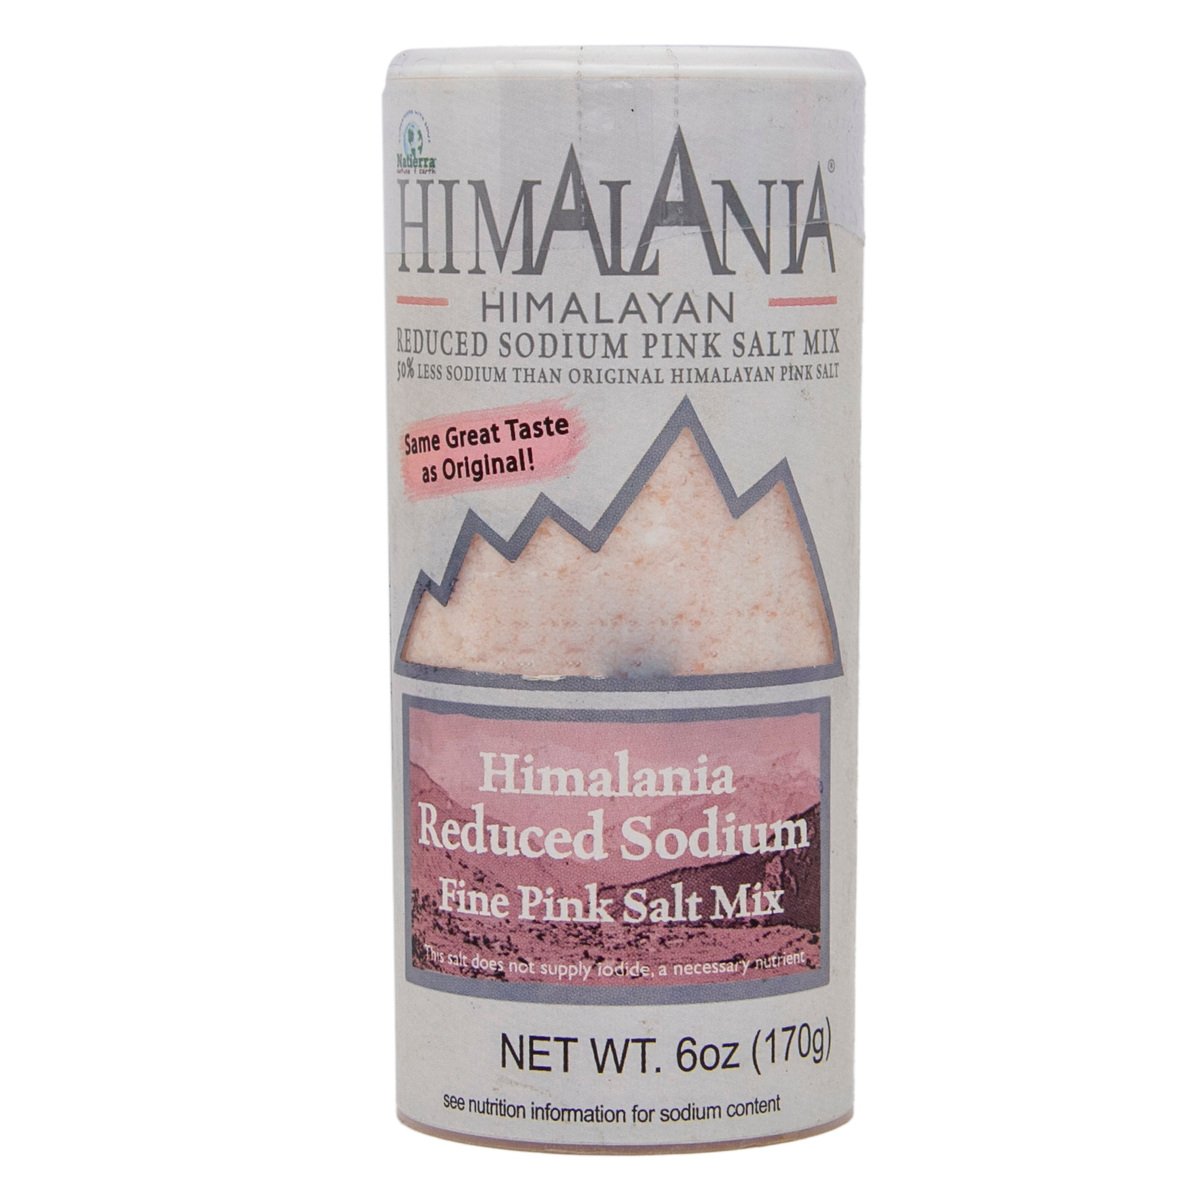 Himalania Himalayan Reduced Sodium Fine Pink Salt Mix 170 g